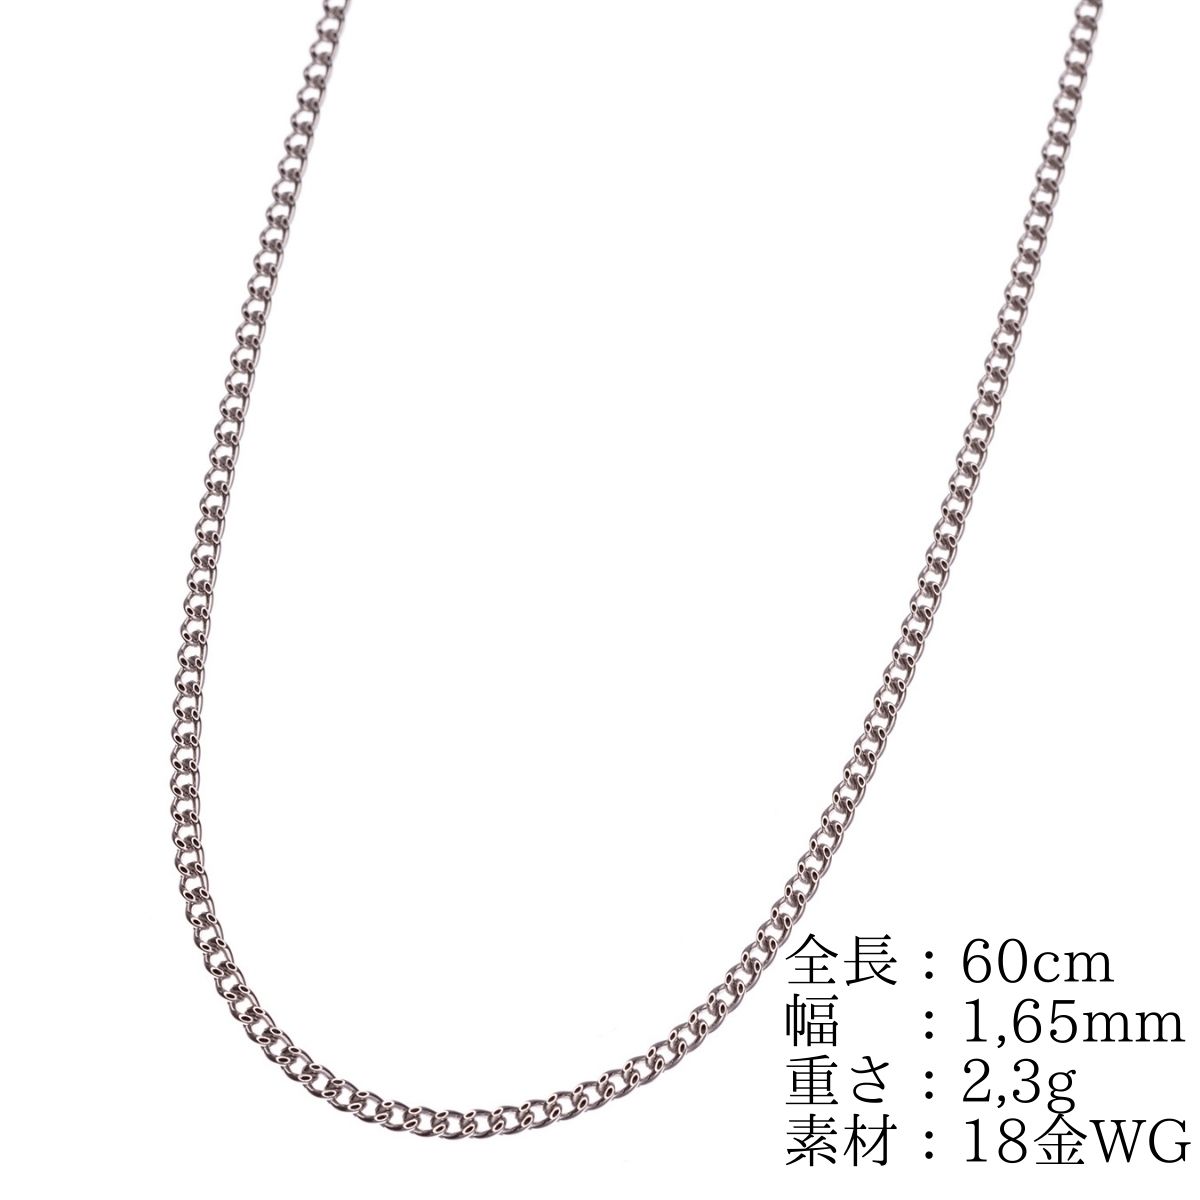 新発売の 《最高品質/日本製18金》喜平ネックレスチェーン/50cm/2g/K18